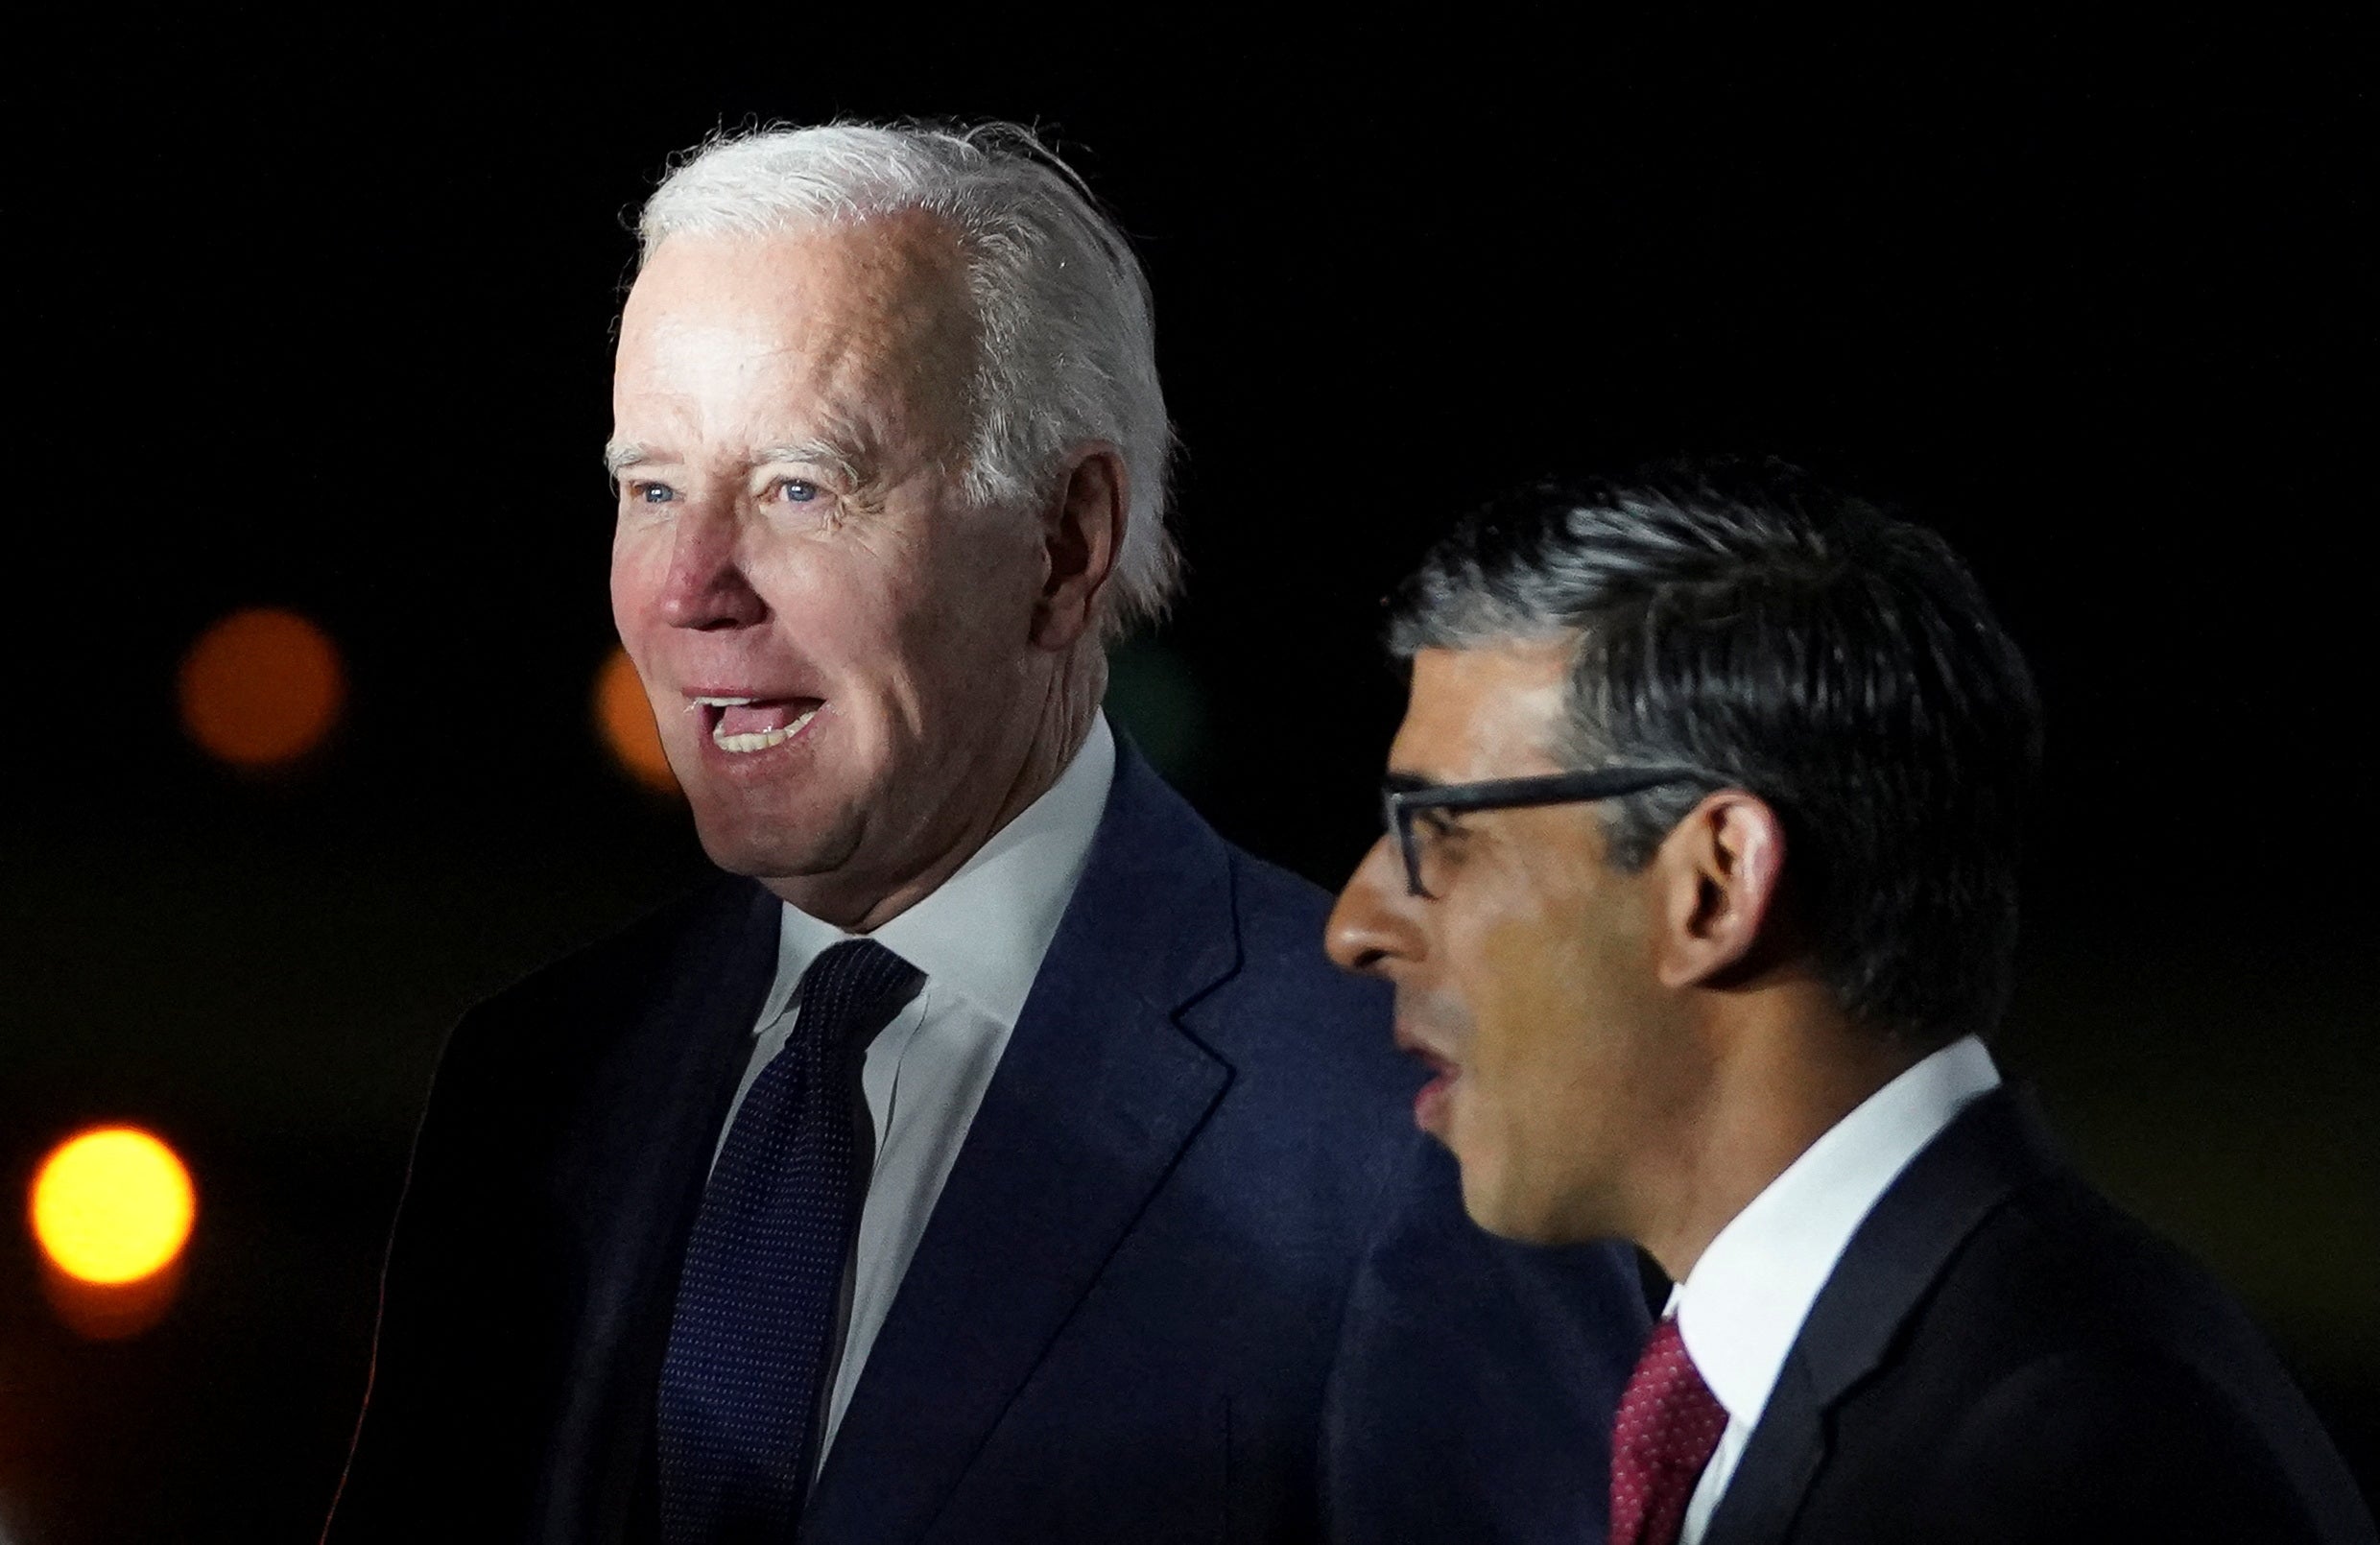 Joe Biden greeted by Rishi Sunak